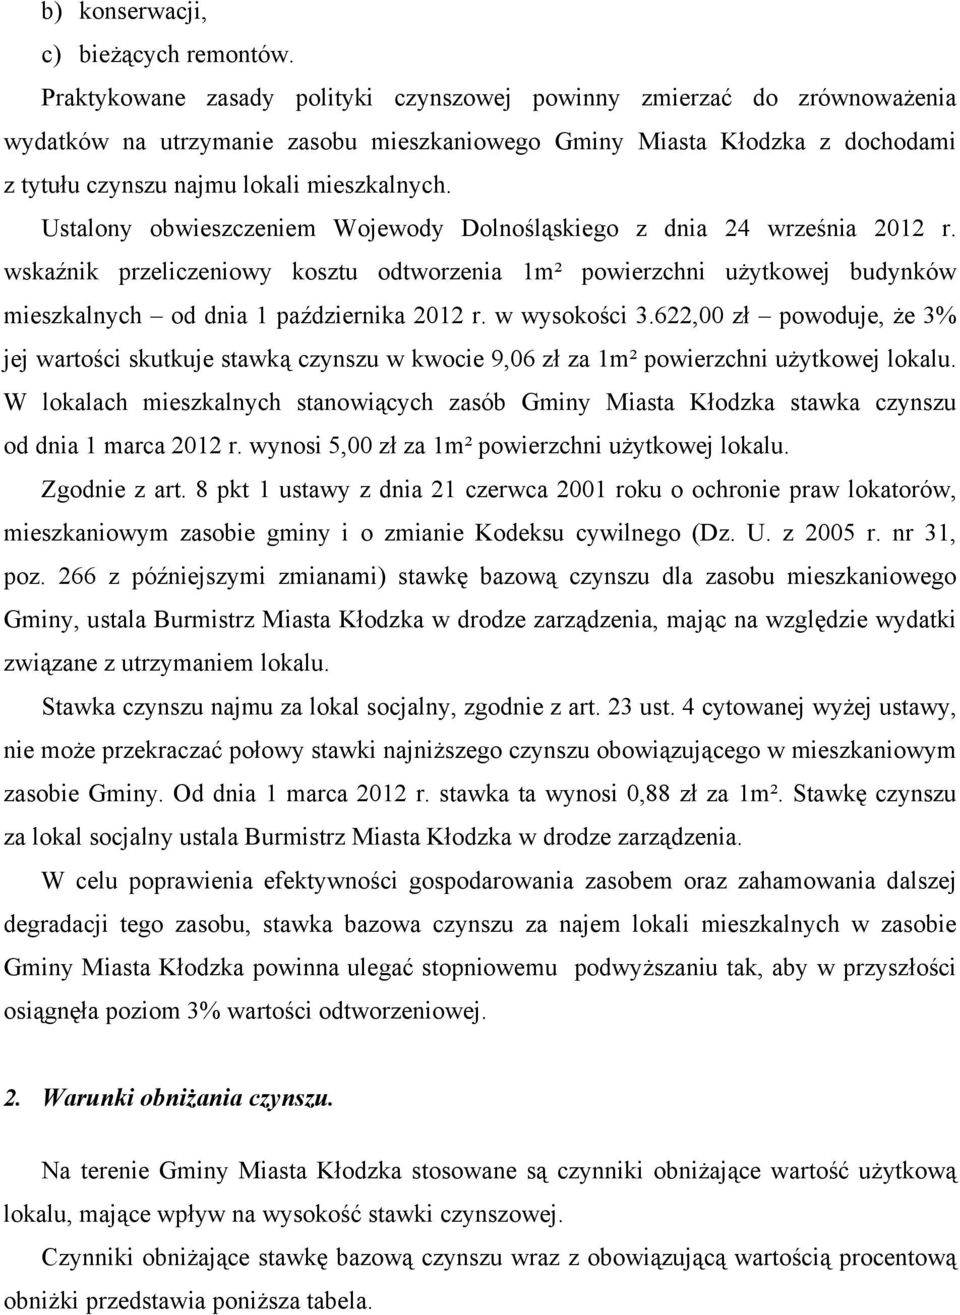 Ustalony obwieszczeniem Wojewody Dolnośląskiego z dnia 24 września 2012 r. wskaźnik przeliczeniowy kosztu odtworzenia 1m² powierzchni użytkowej budynków mieszkalnych od dnia 1 października 2012 r.